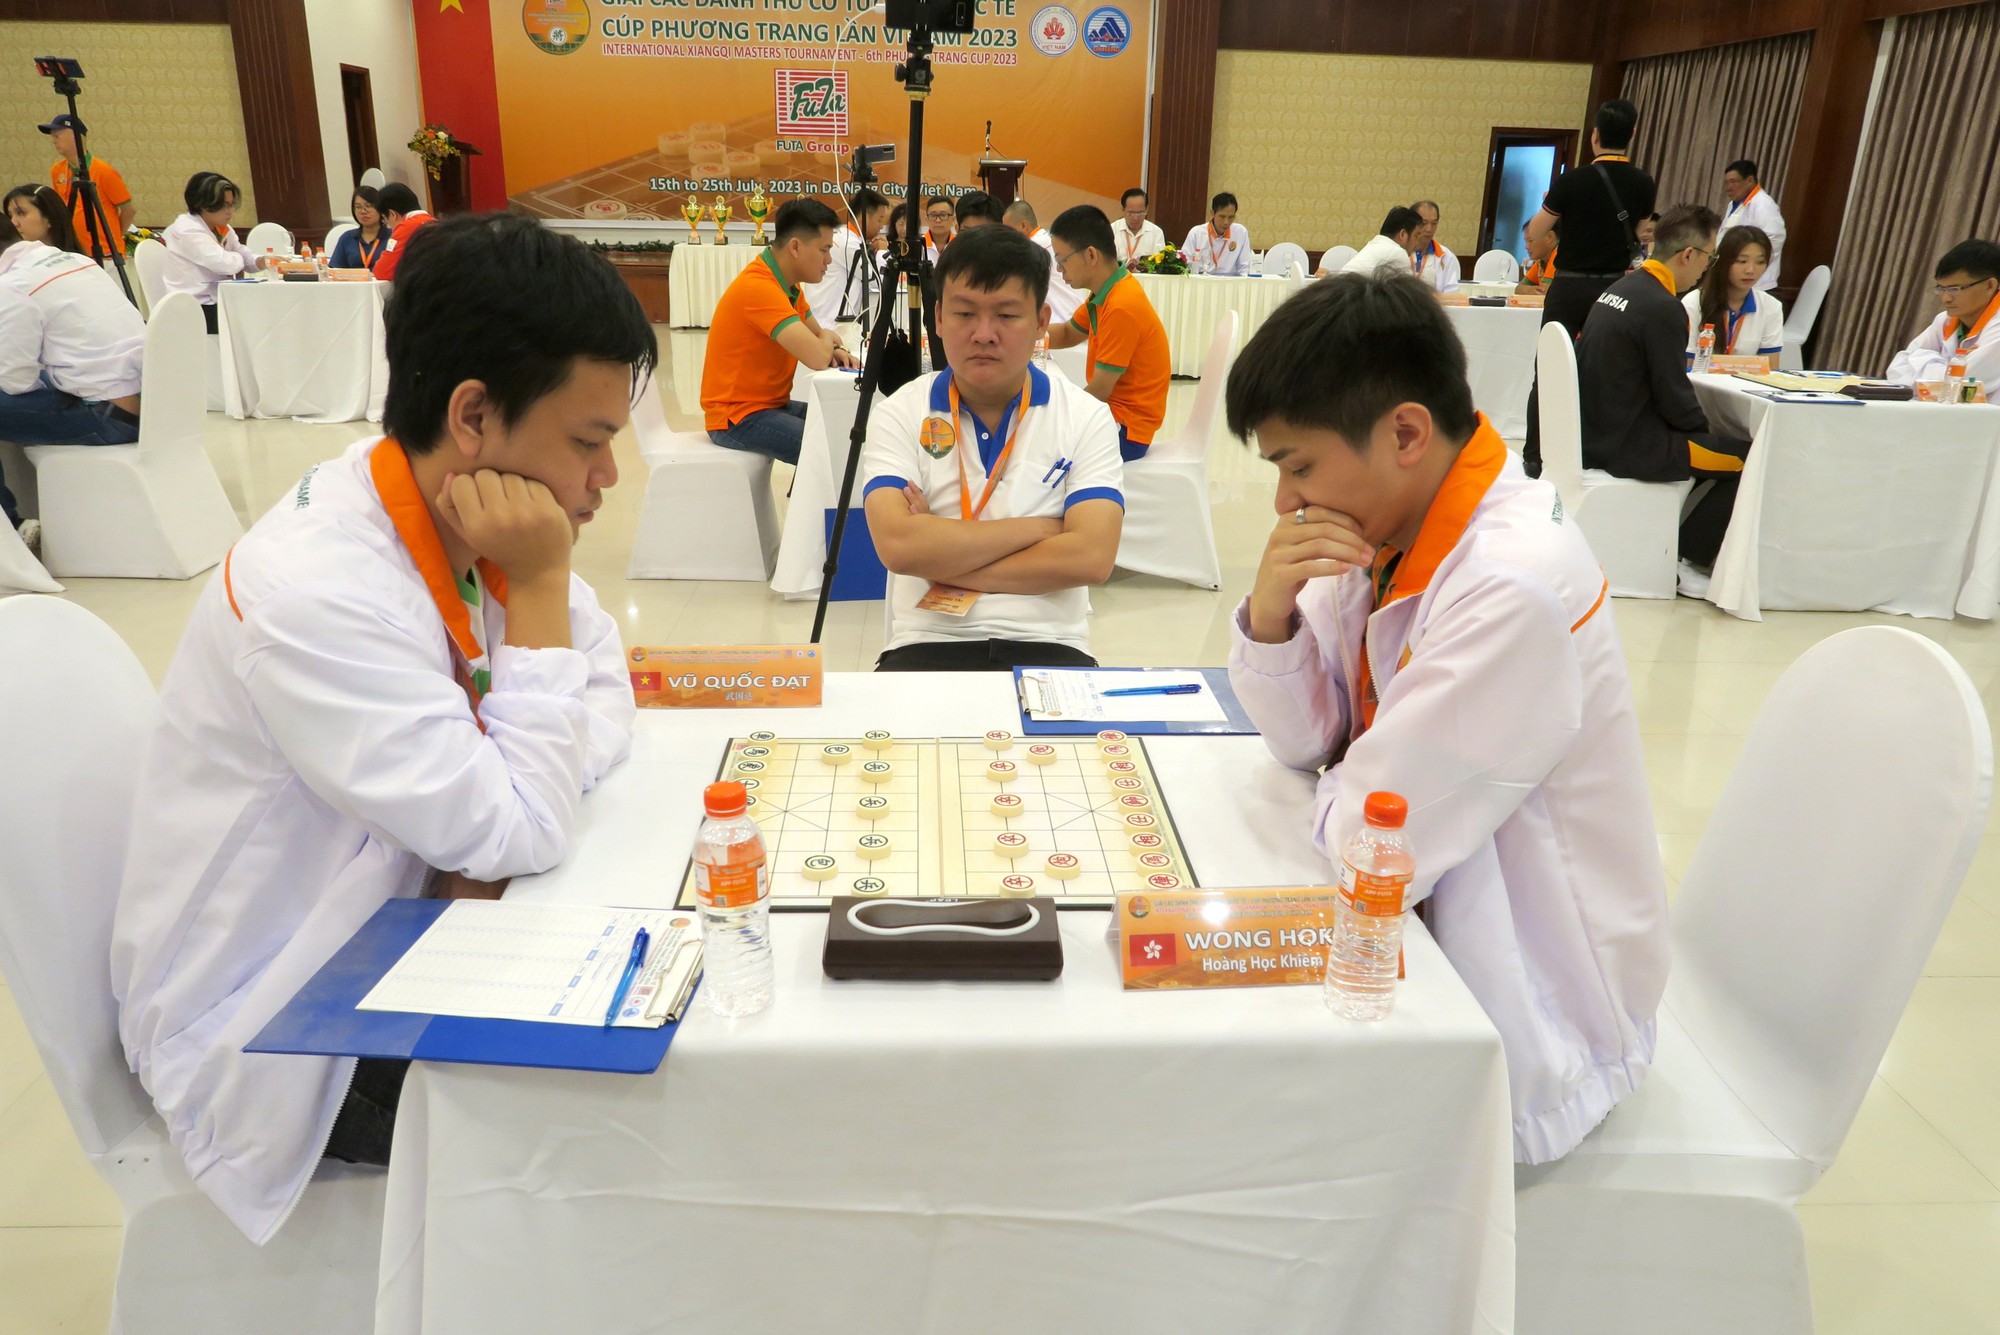 Thẩm Nghị Hào và Nguyễn Thành Bảo sớm giành vé tứ kết - Ảnh 3.